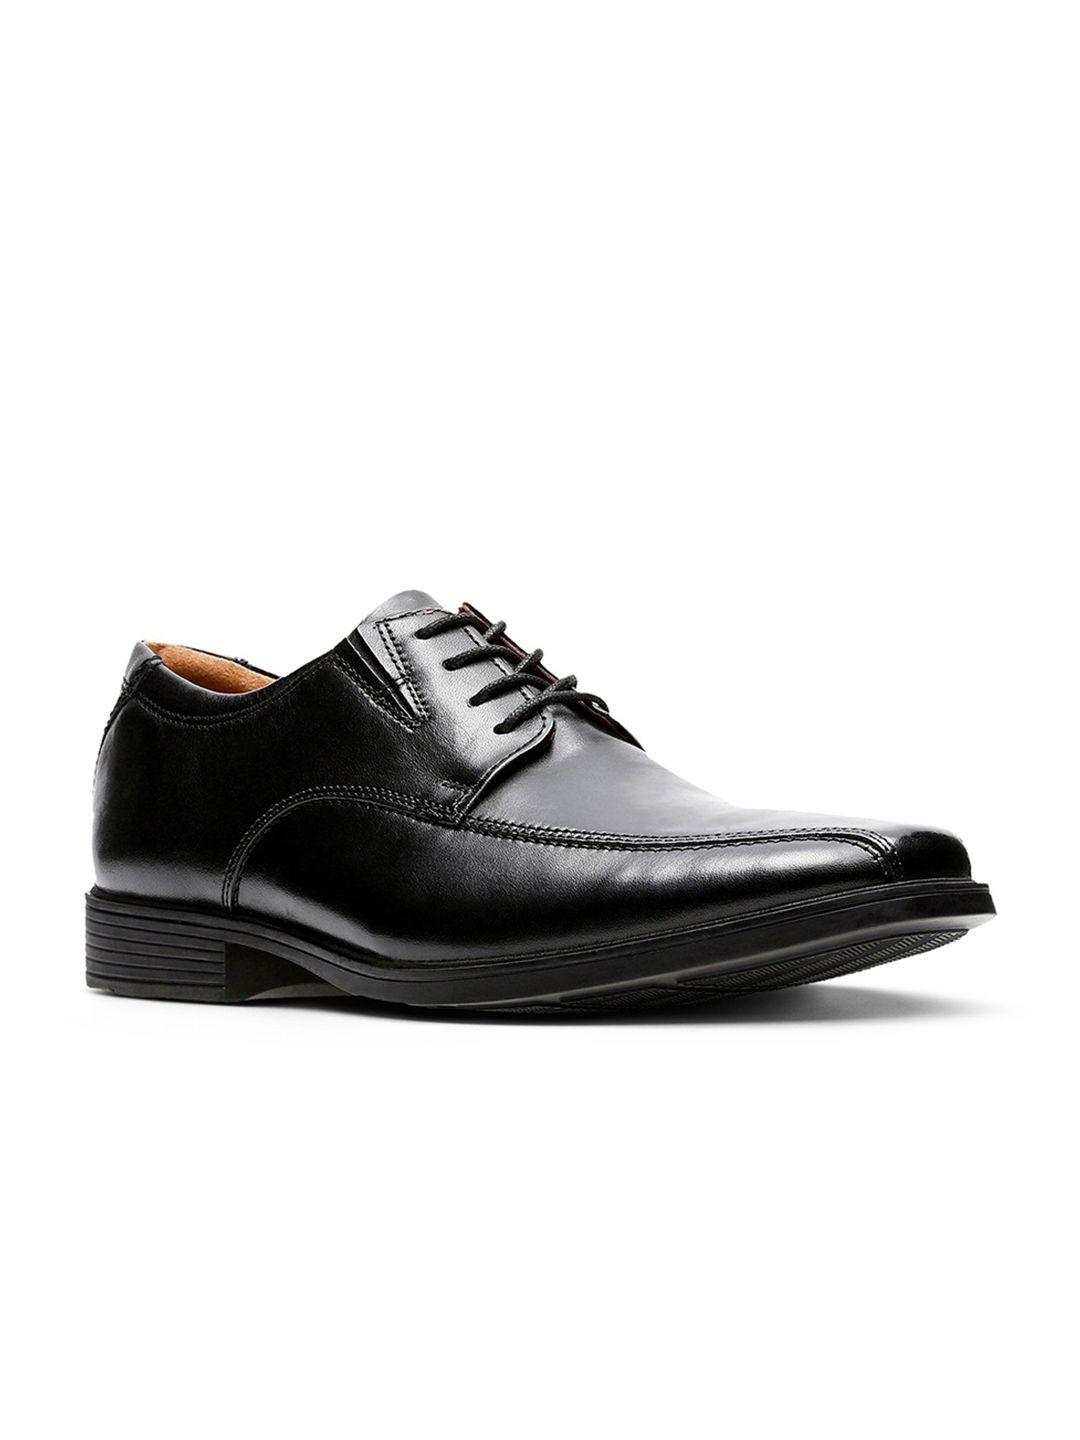 clarks-men-black-solid-leather-formal-derbys